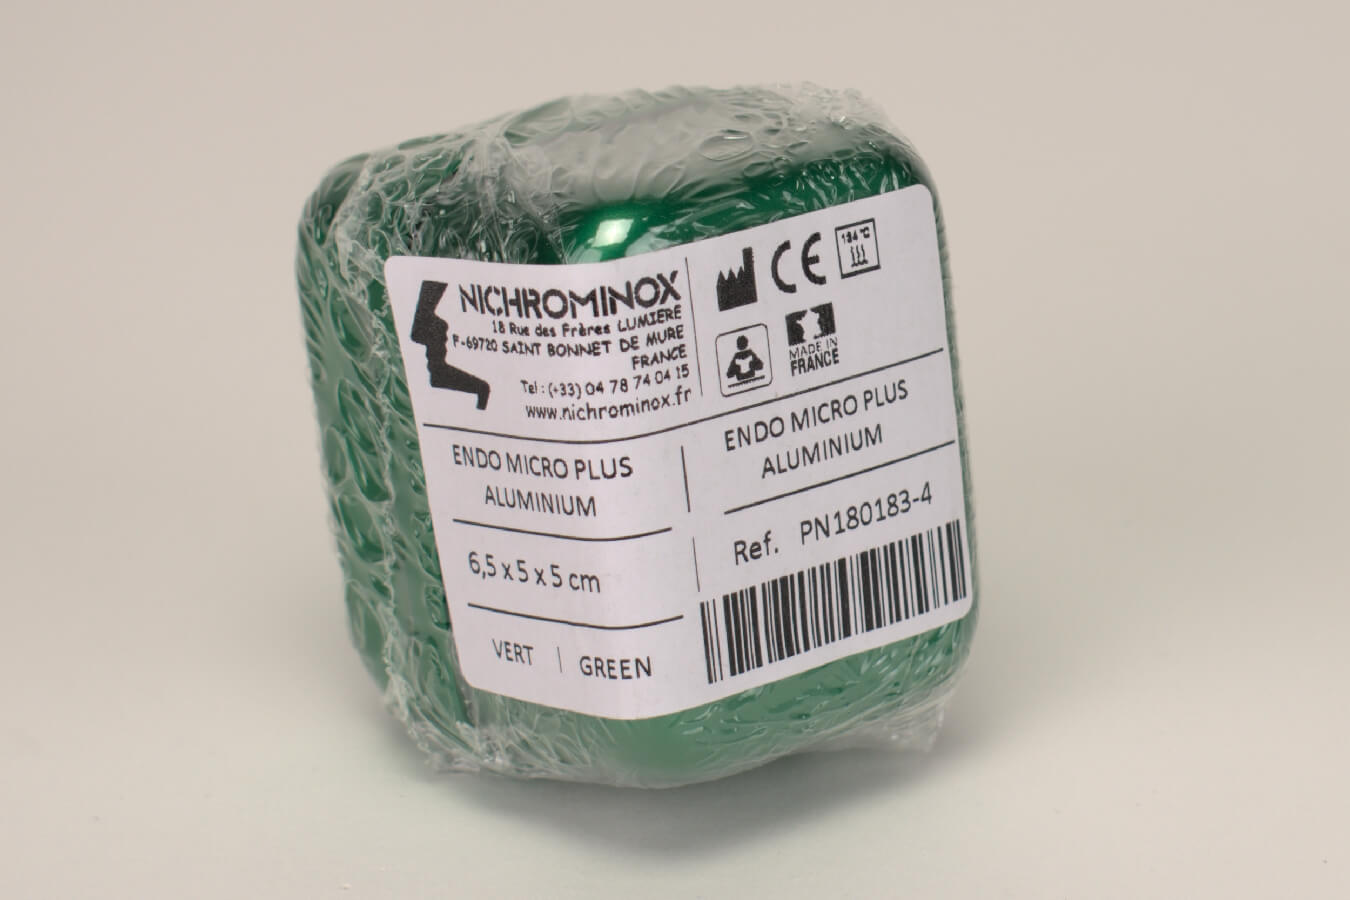 Endo Box Micro Plus grün 6,5x5x5cm